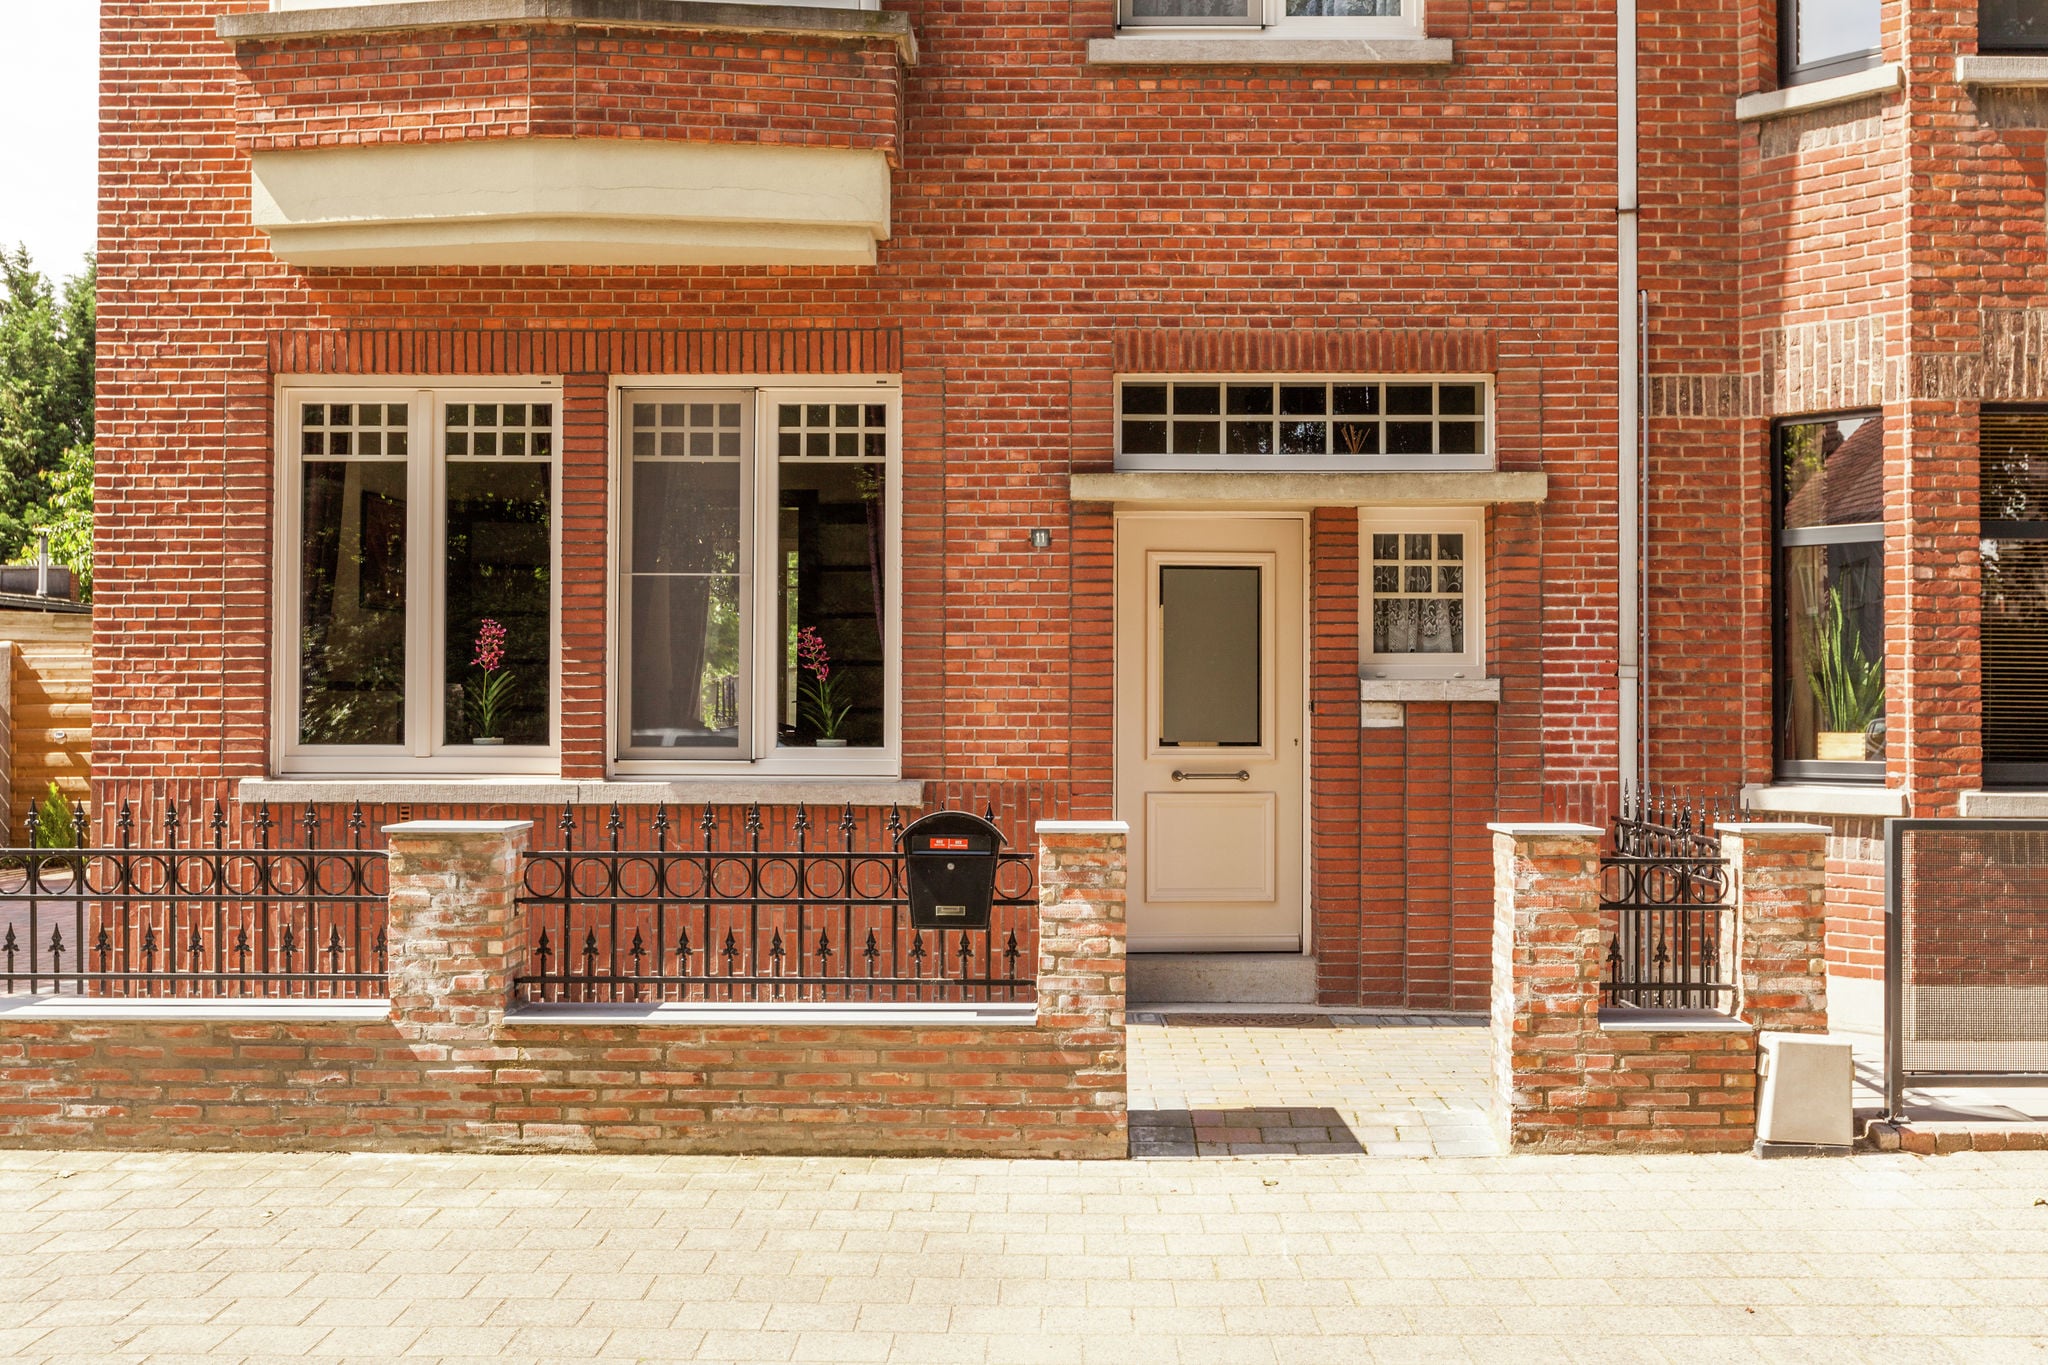 Prachtig huis in Engelse stijl in Mol in de Antwerpse Kempen.